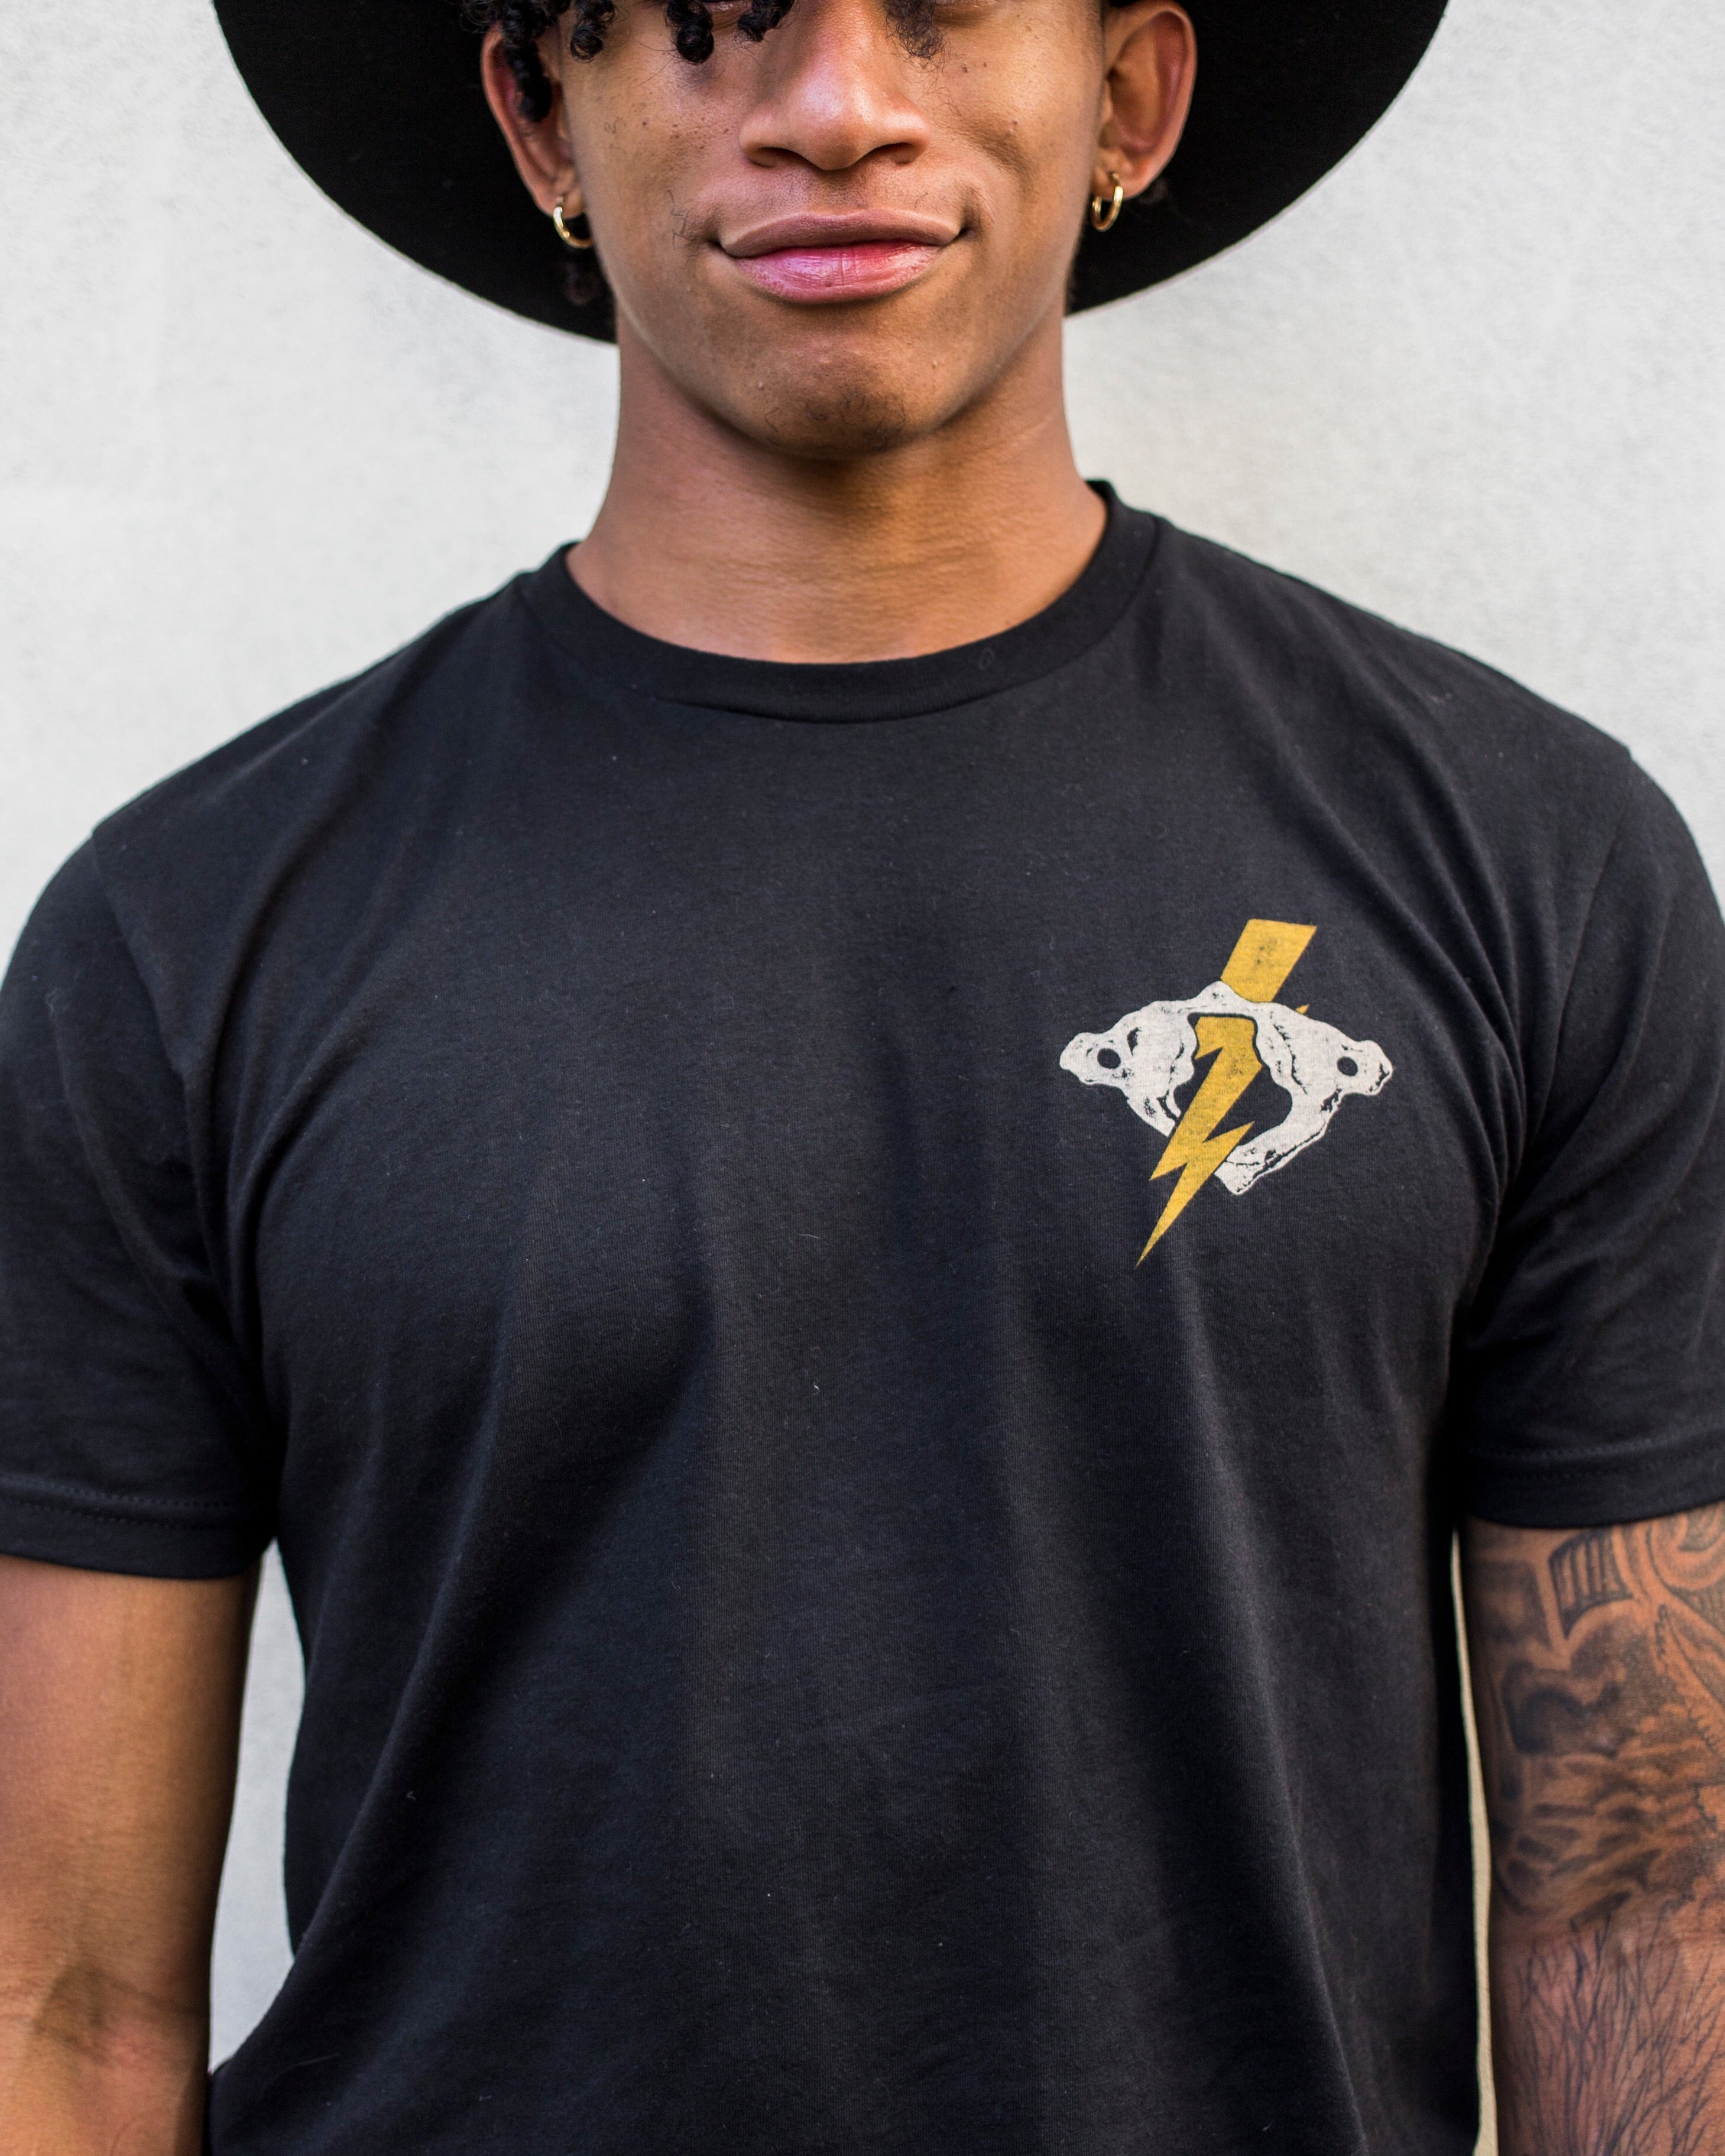 Deliver Lightning T-Shirt in Black